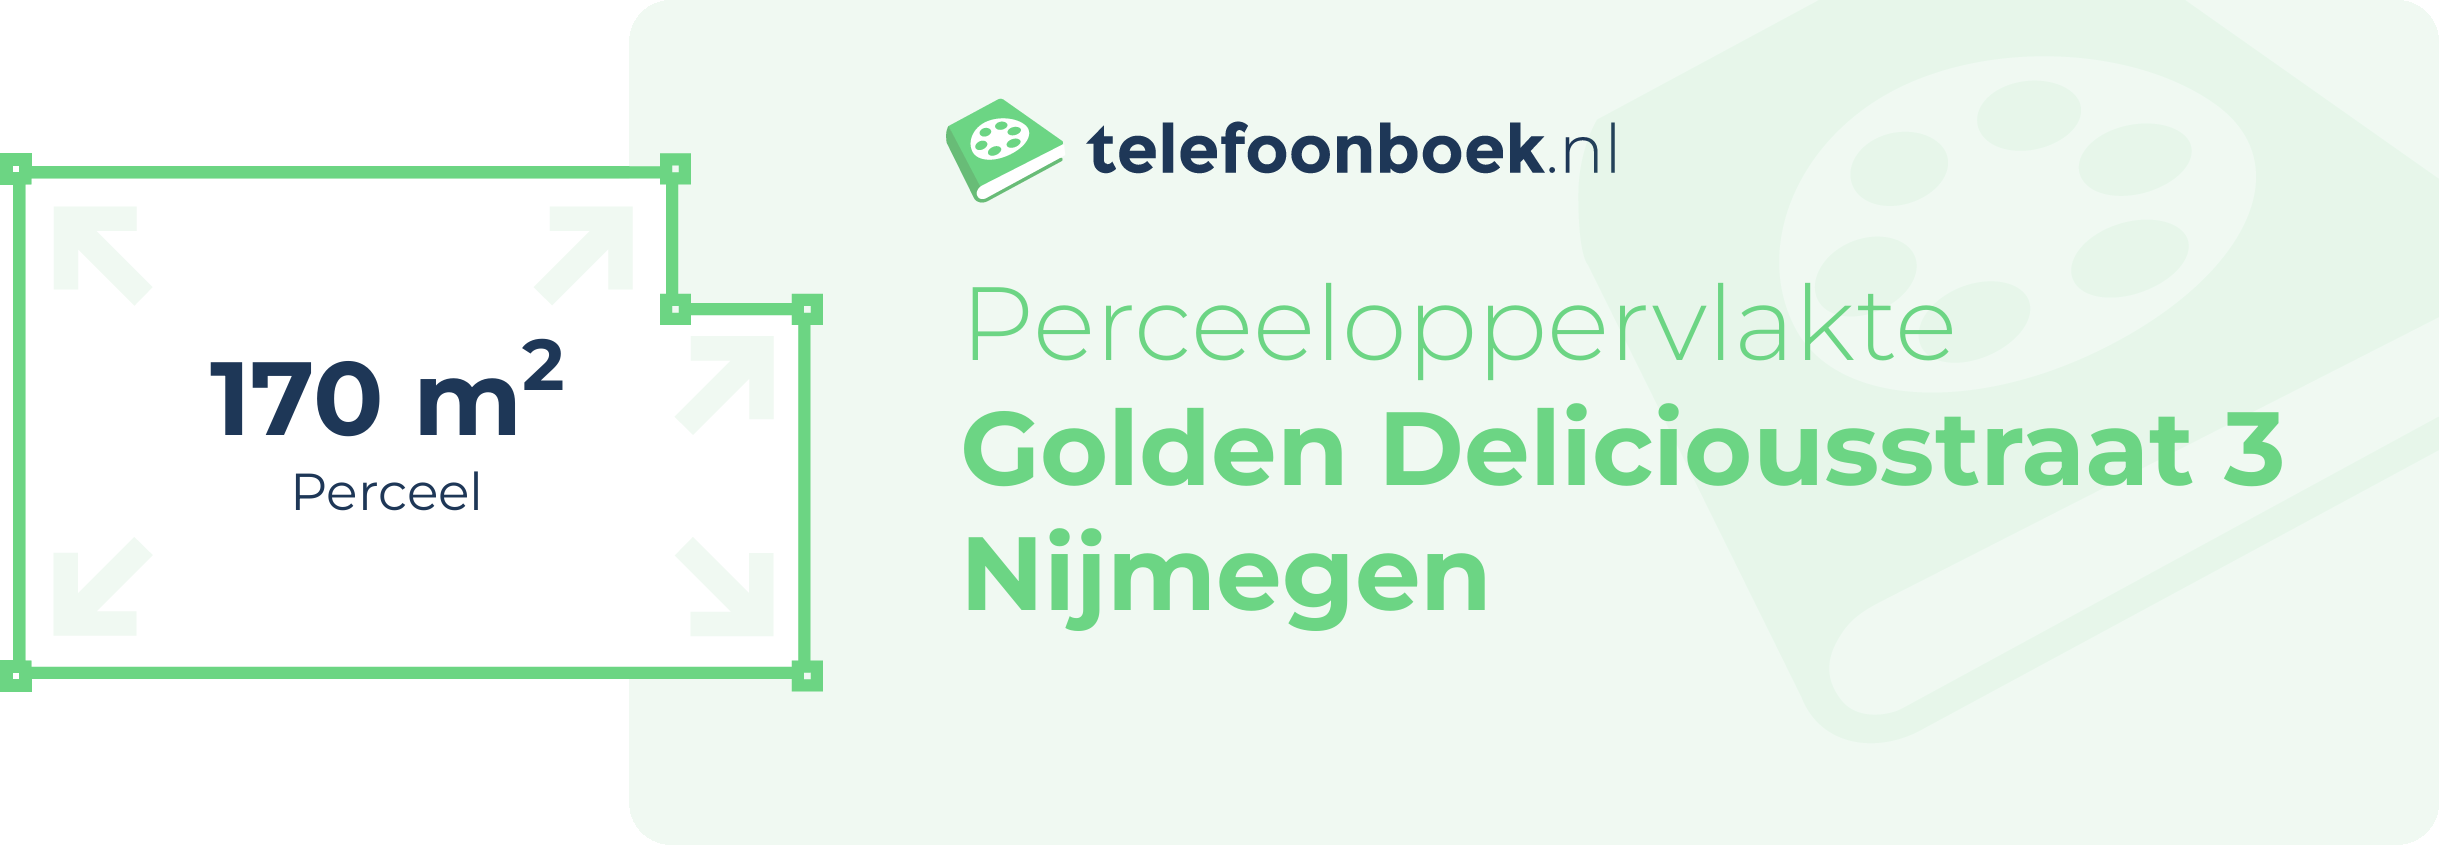 Perceeloppervlakte Golden Deliciousstraat 3 Nijmegen